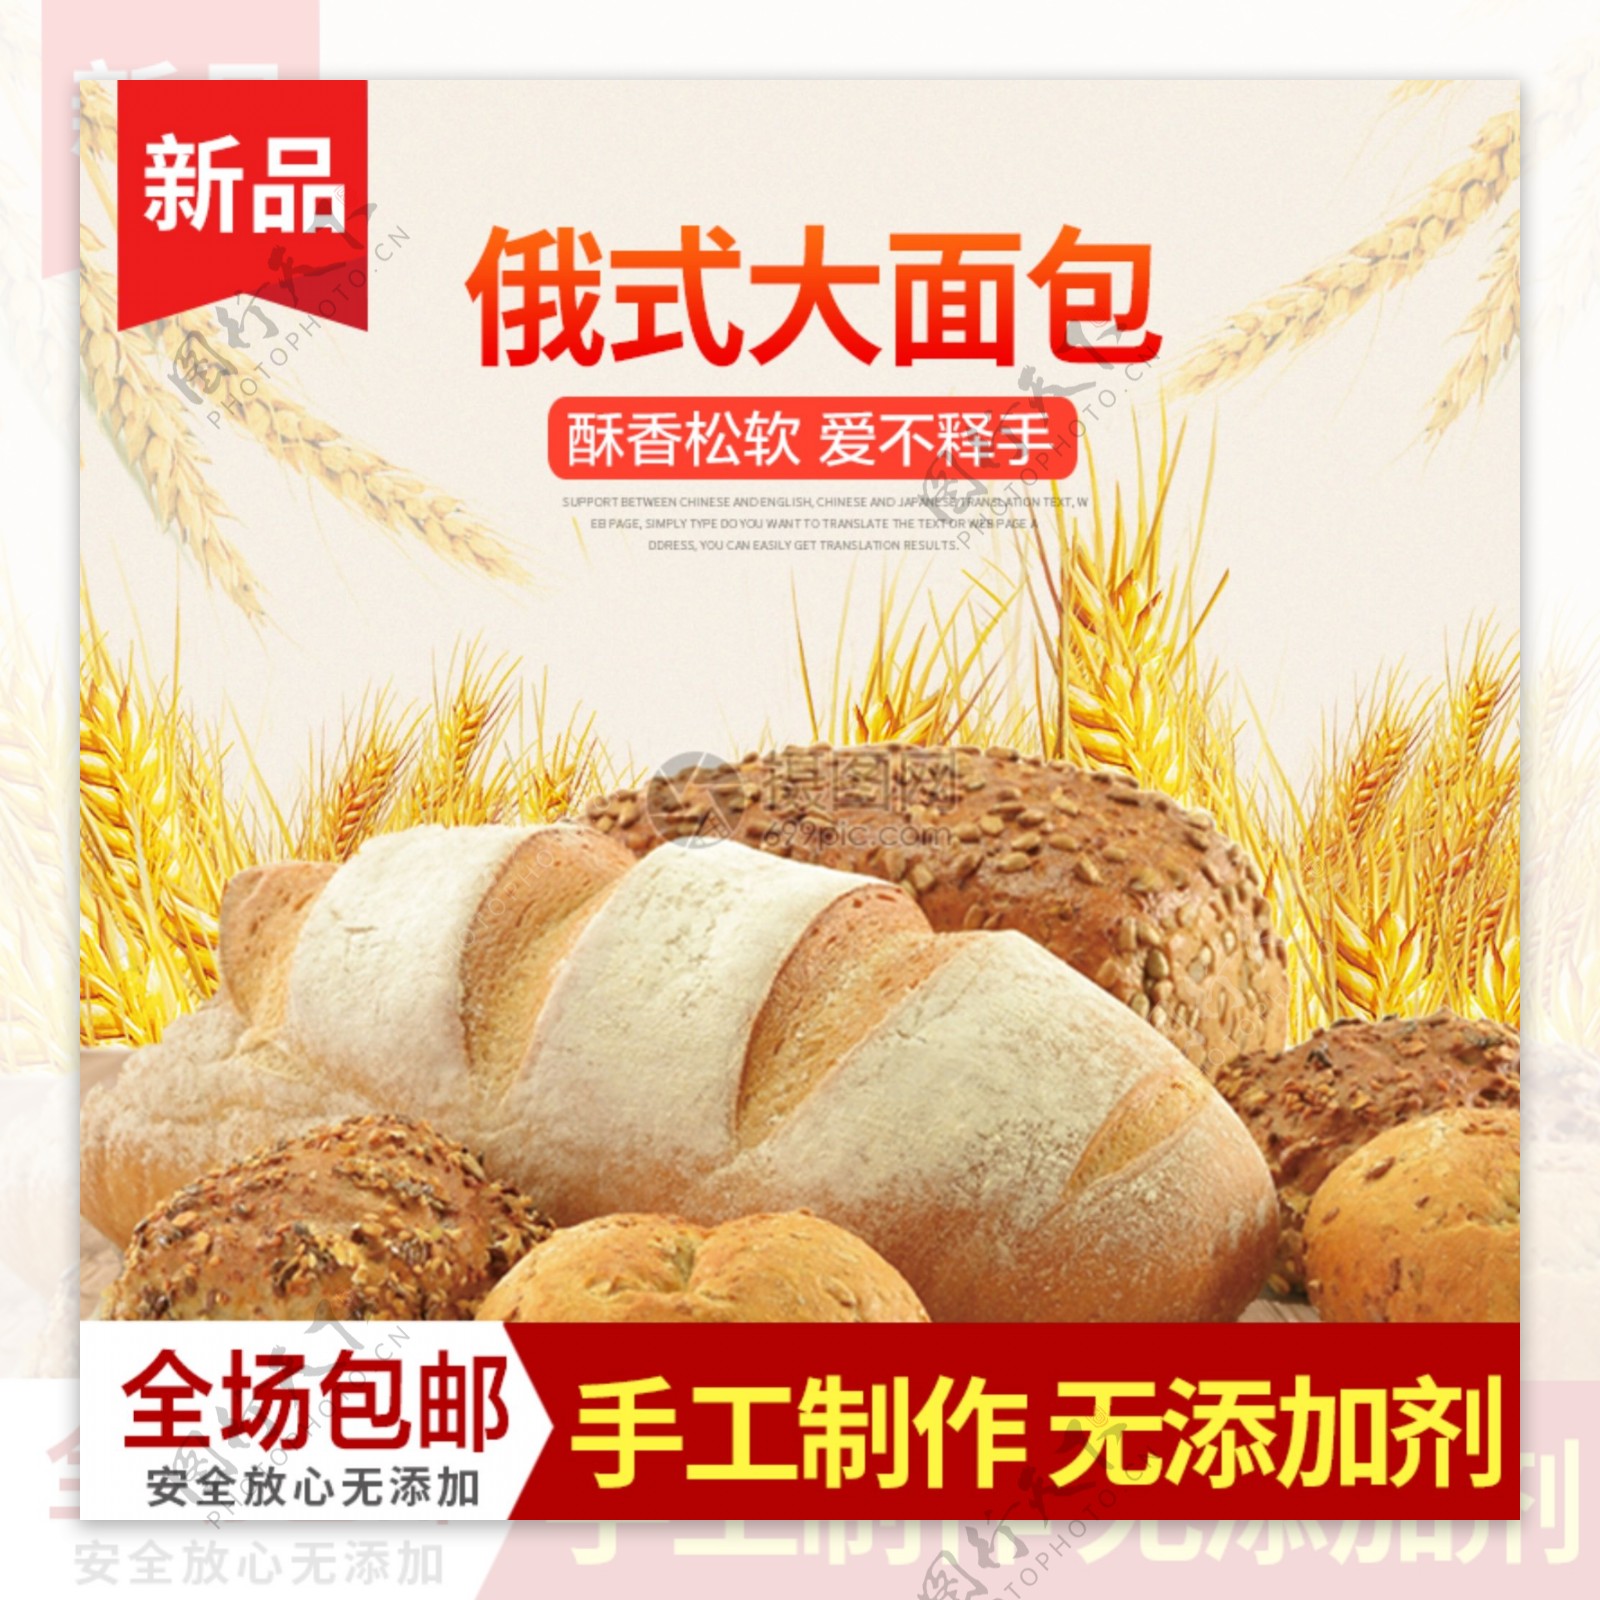 大面包促销淘宝主图